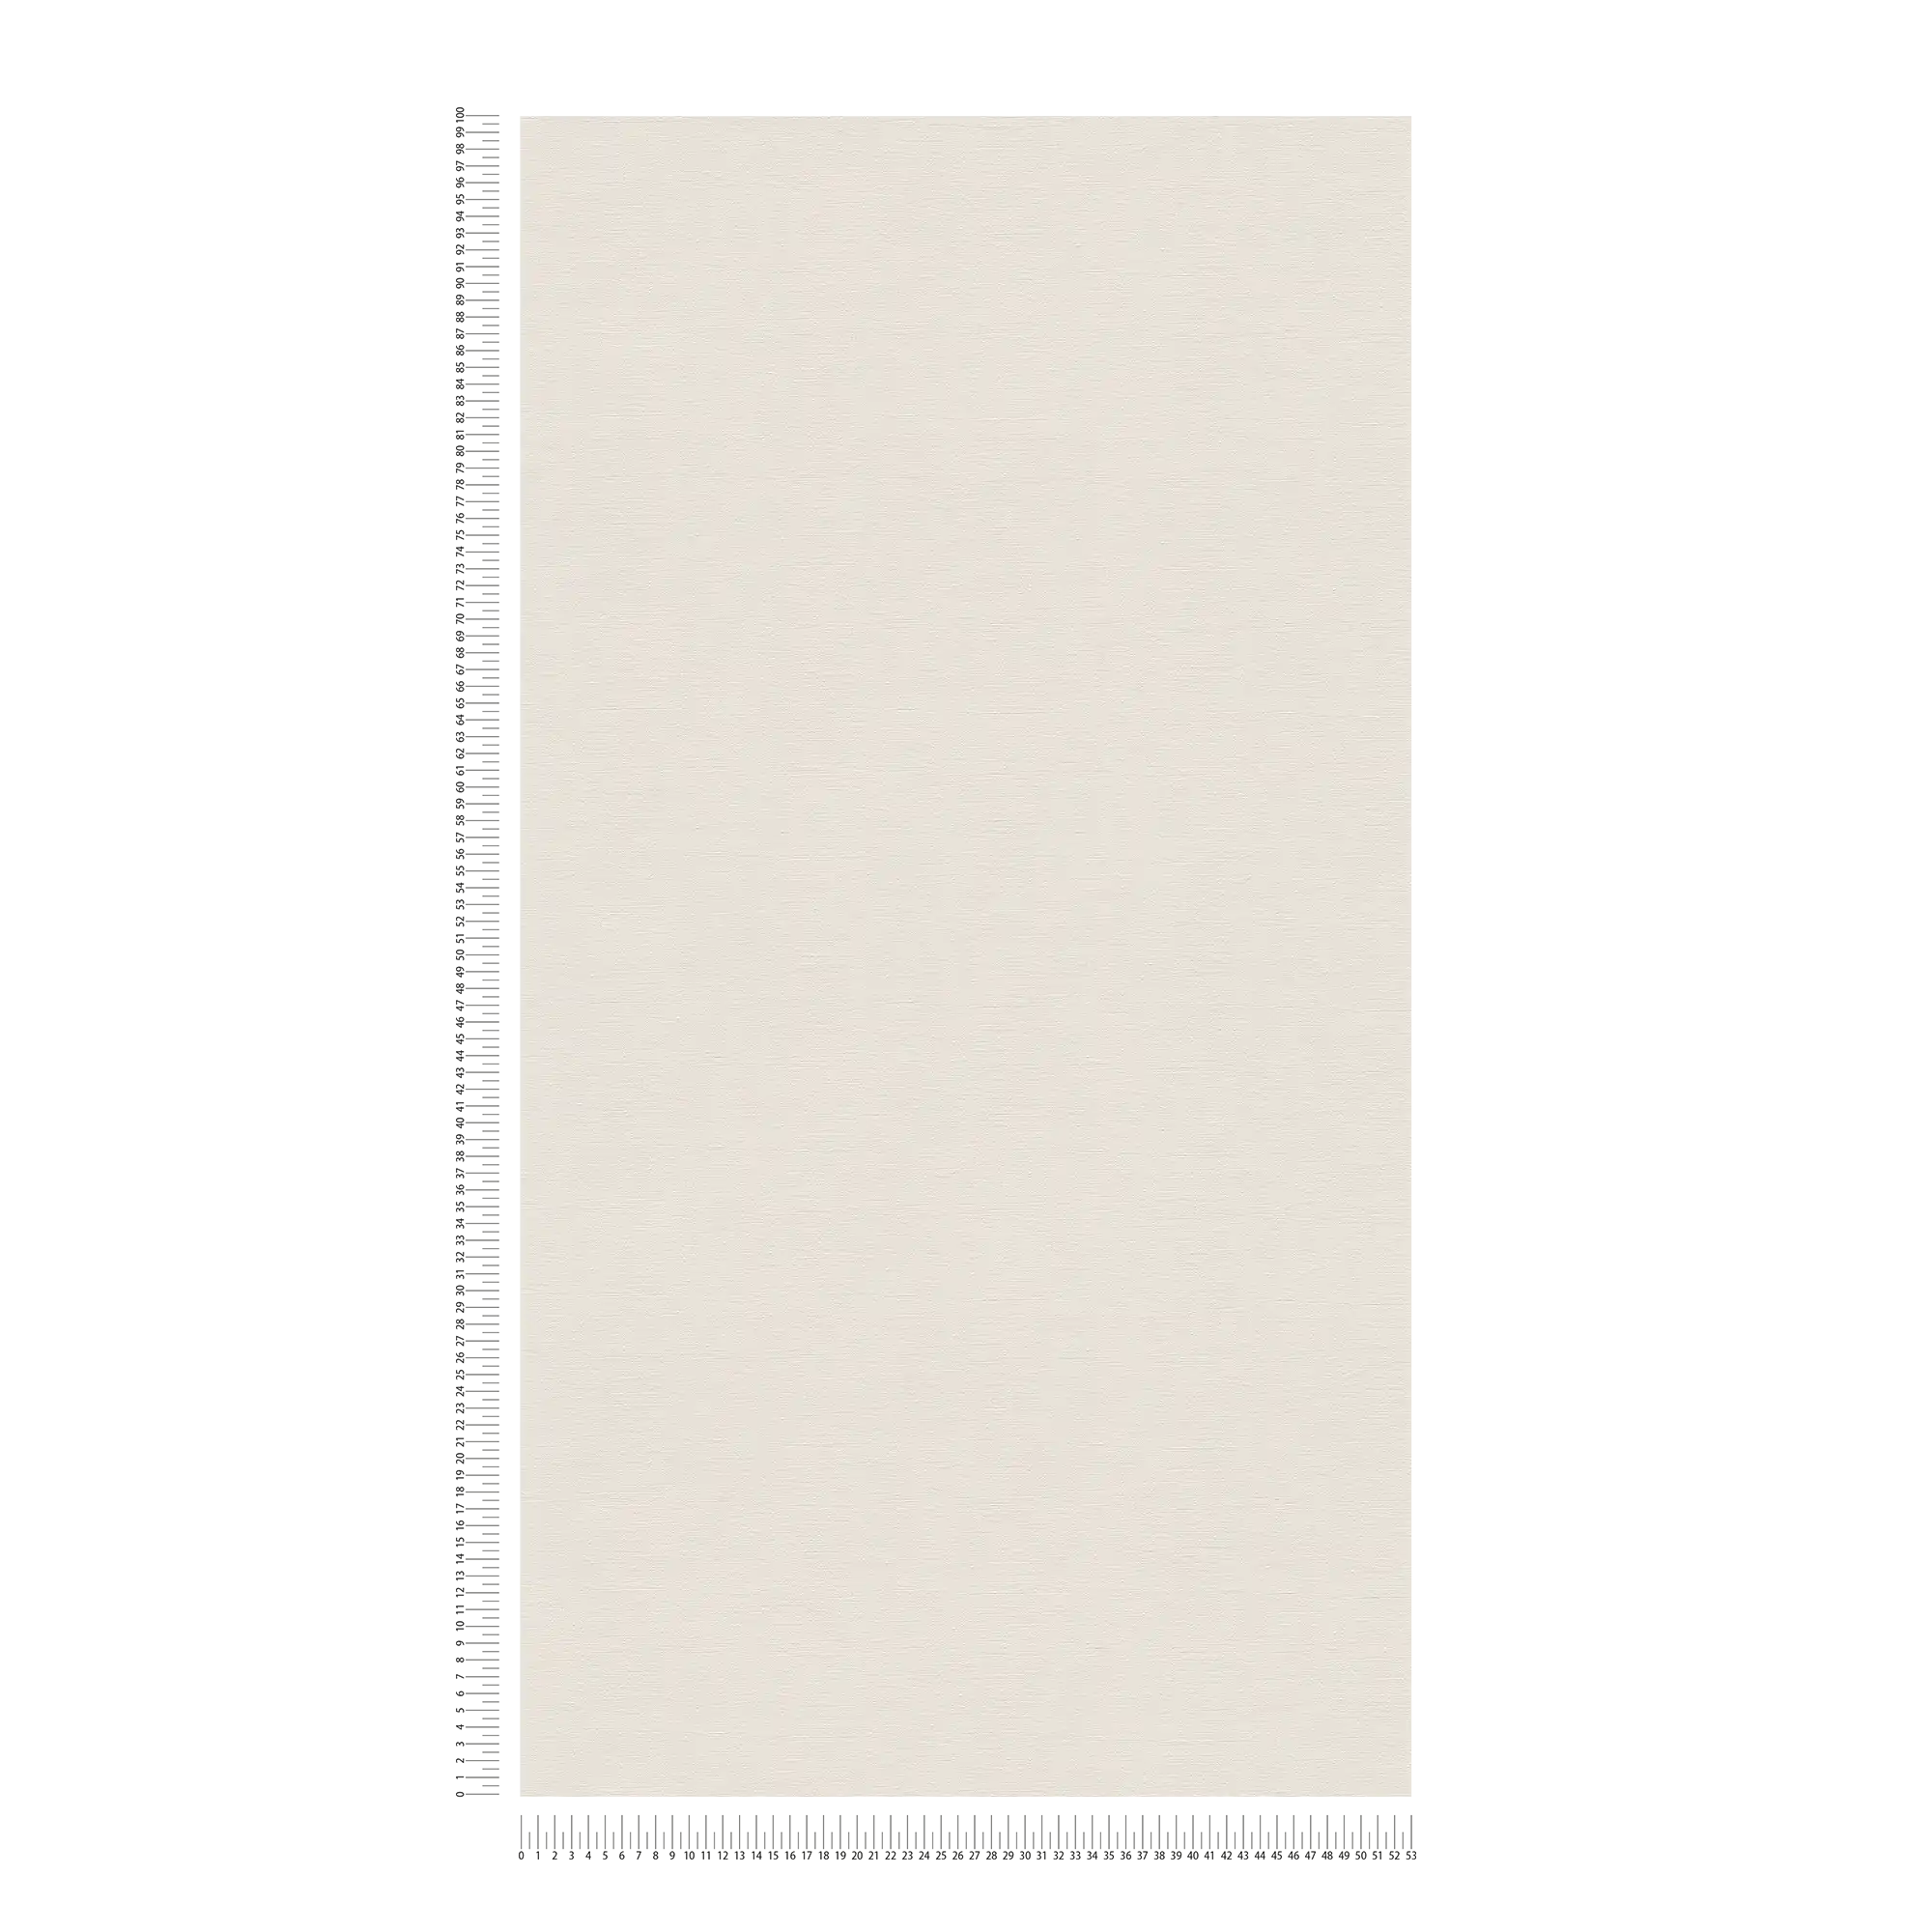             Non-woven wallpaper plain with light sheen - cream, grey
        